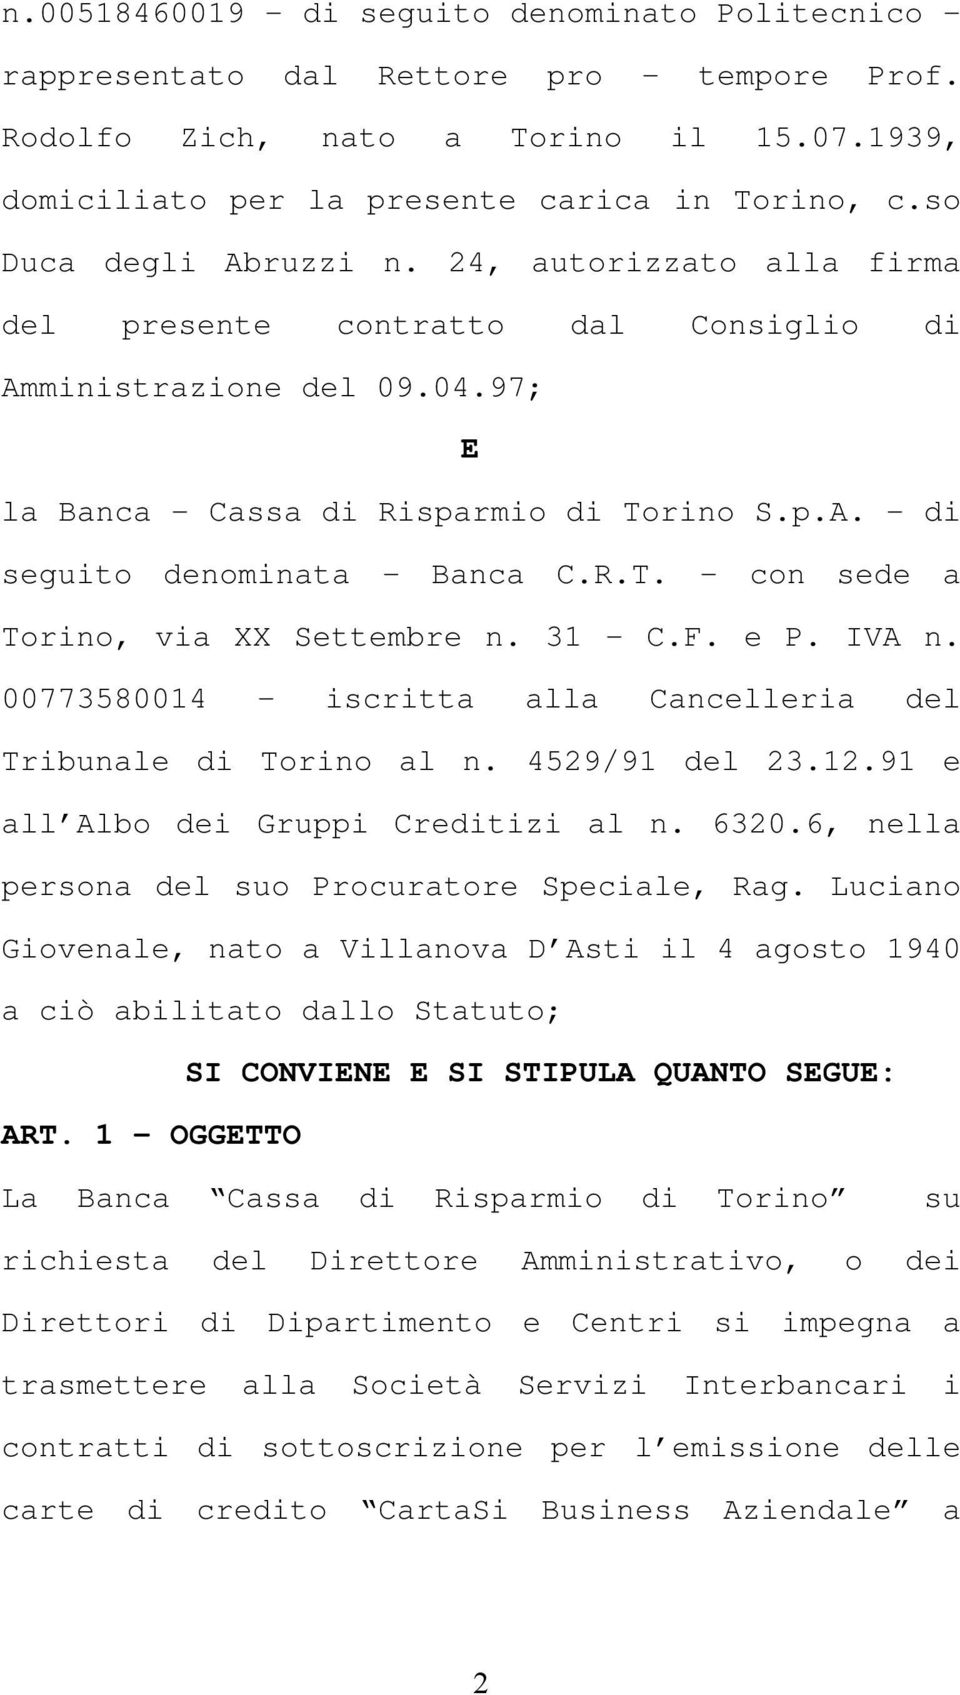 R.T. - con sede a Torino, via XX Settembre n. 31 - C.F. e P. IVA n. 00773580014 - iscritta alla Cancelleria del Tribunale di Torino al n. 4529/91 del 23.12.91 e all Albo dei Gruppi Creditizi al n.